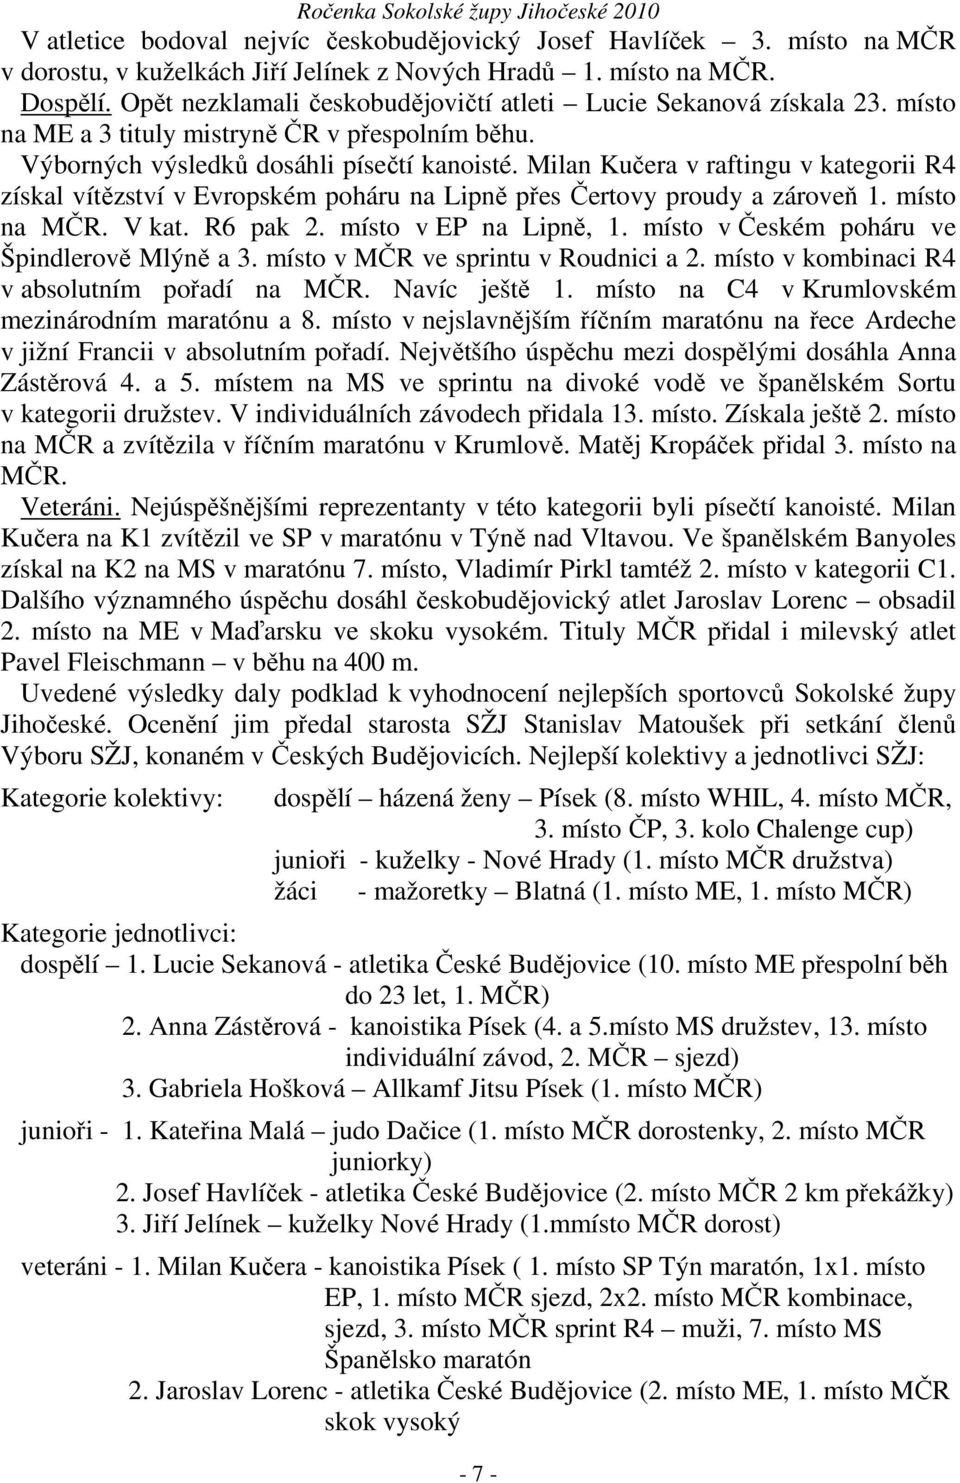 Milan Kučera v raftingu v kategorii R4 získal vítězství v Evropském poháru na Lipně přes Čertovy proudy a zároveň 1. místo na MČR. V kat. R6 pak 2. místo v EP na Lipně, 1.